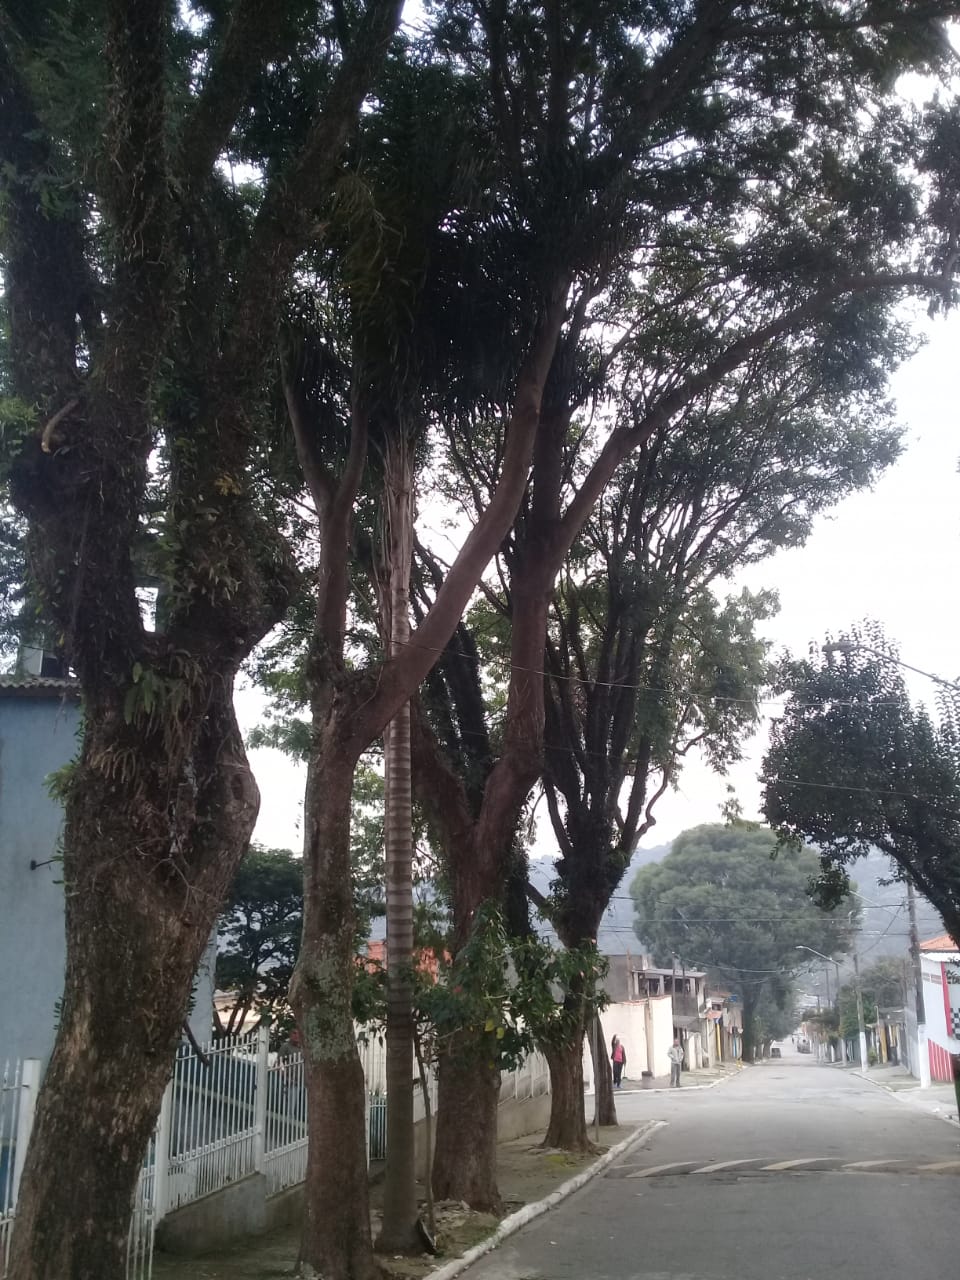 Seis árvores na calçada da rua, podadas.